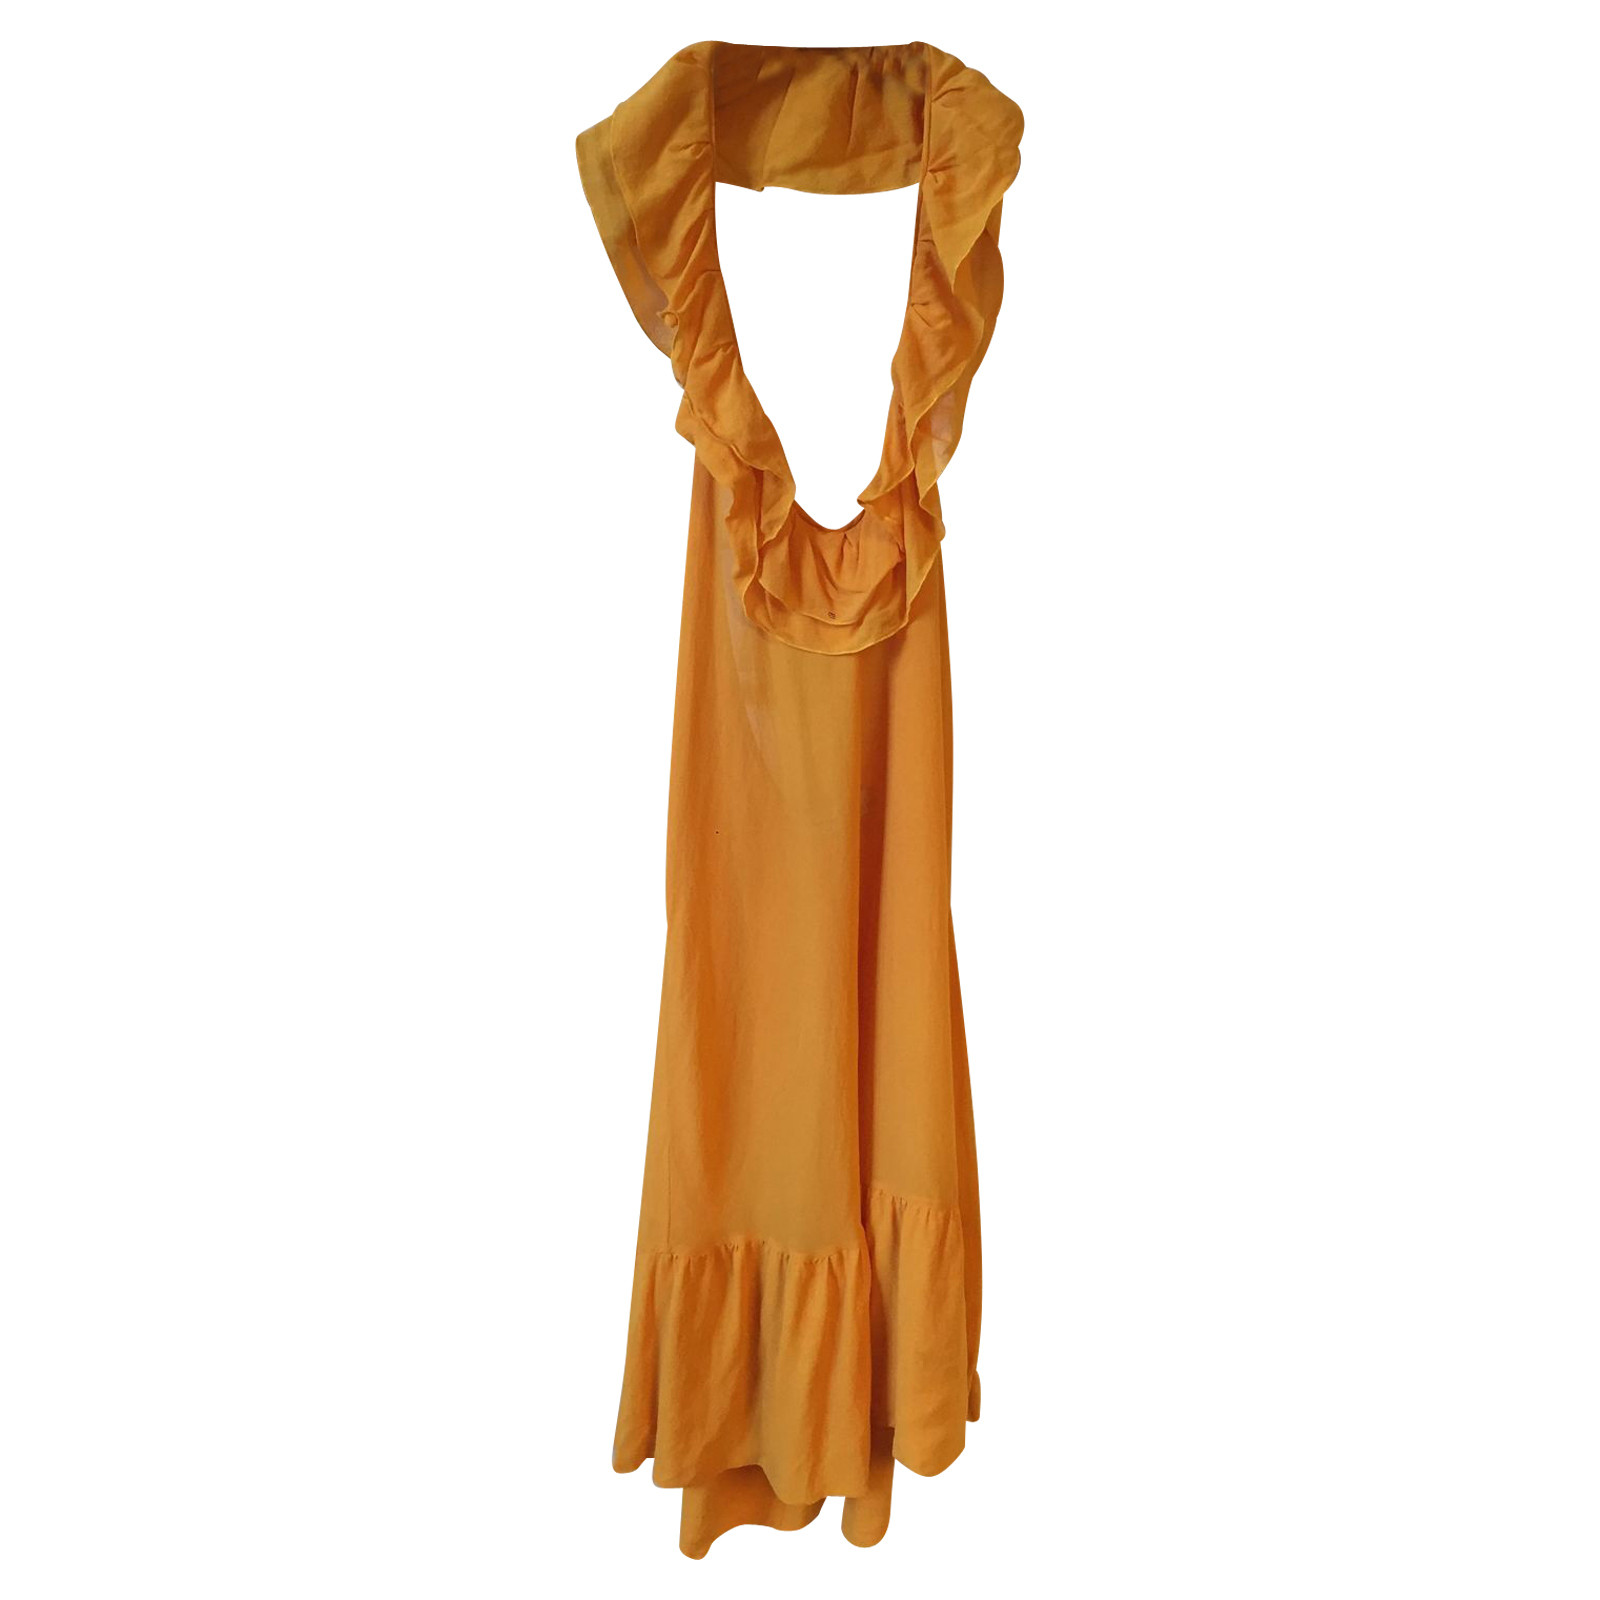 Christian Dior Gelbes Kleid Second Hand Christian Dior Gelbes Kleid Gebraucht Kaufen Fur 1